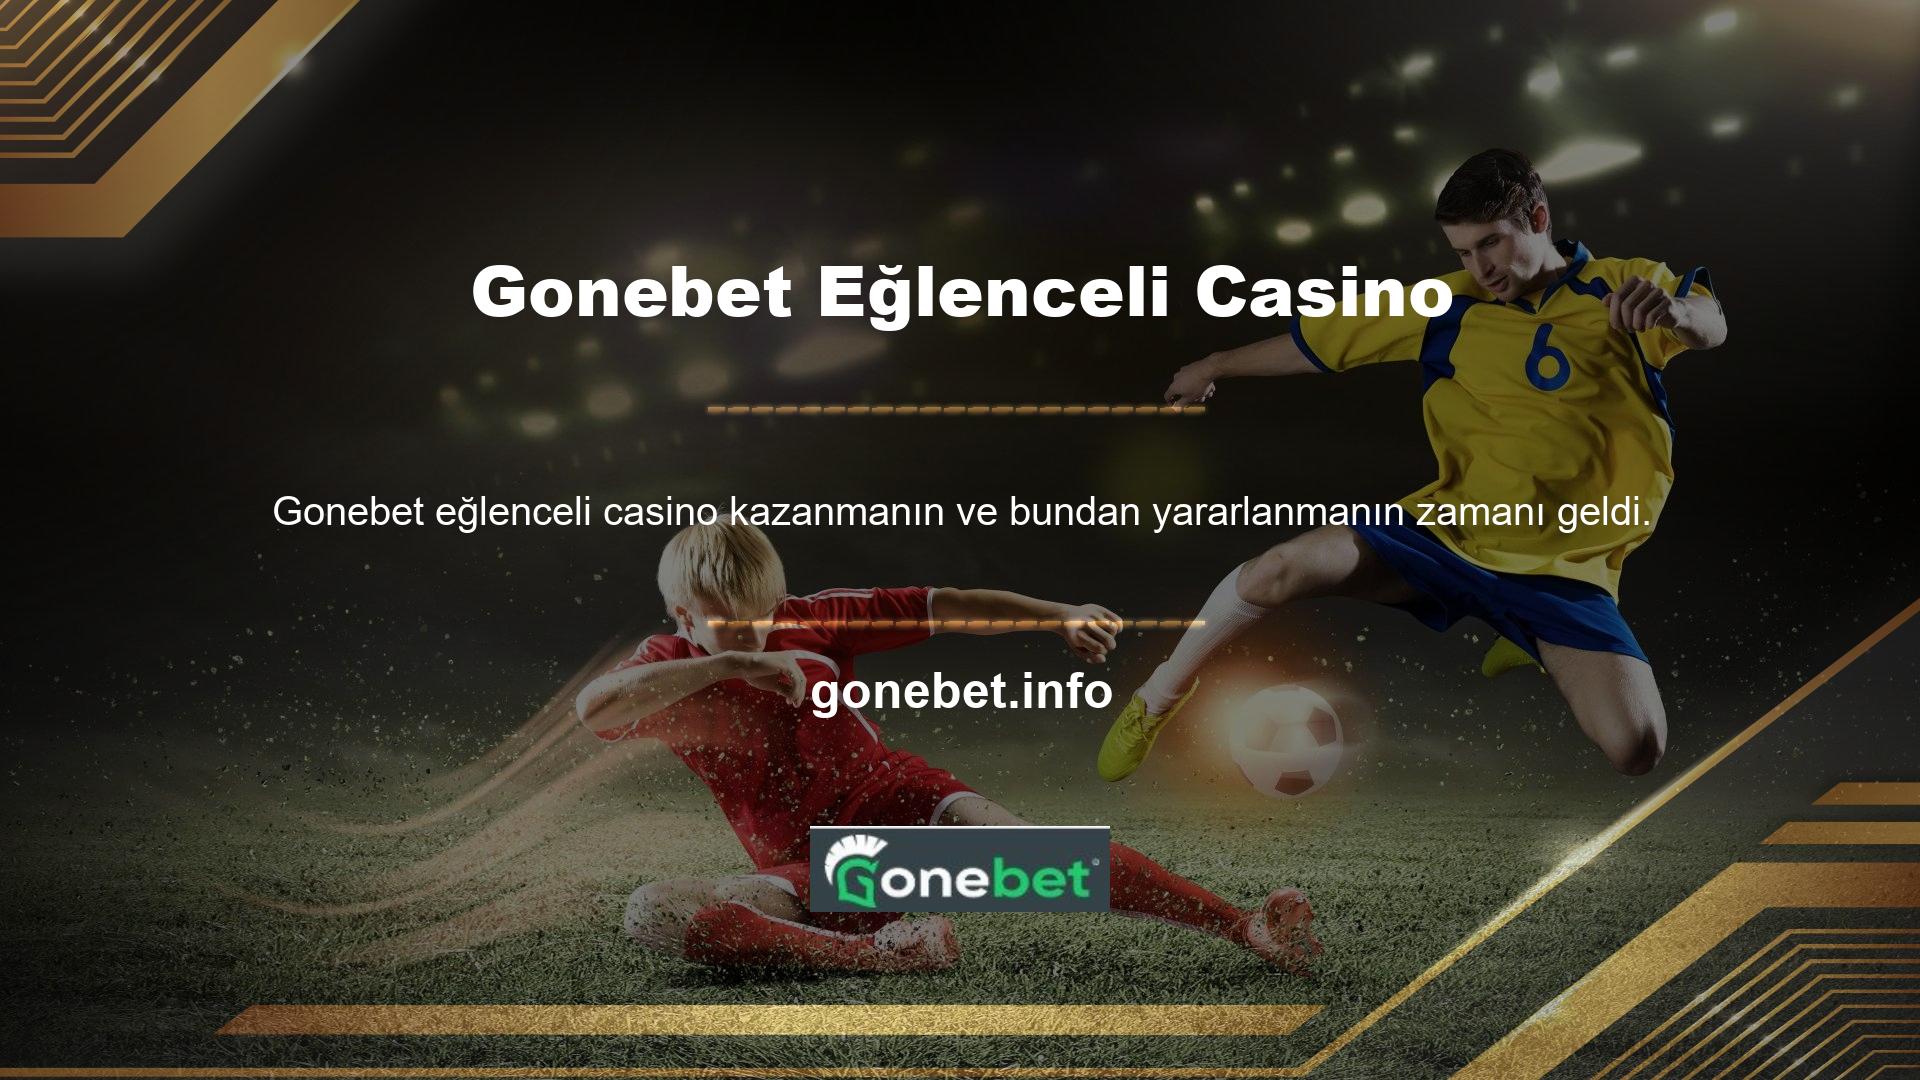 Gonebet Games bakiye promosyonları sunmamaktadır